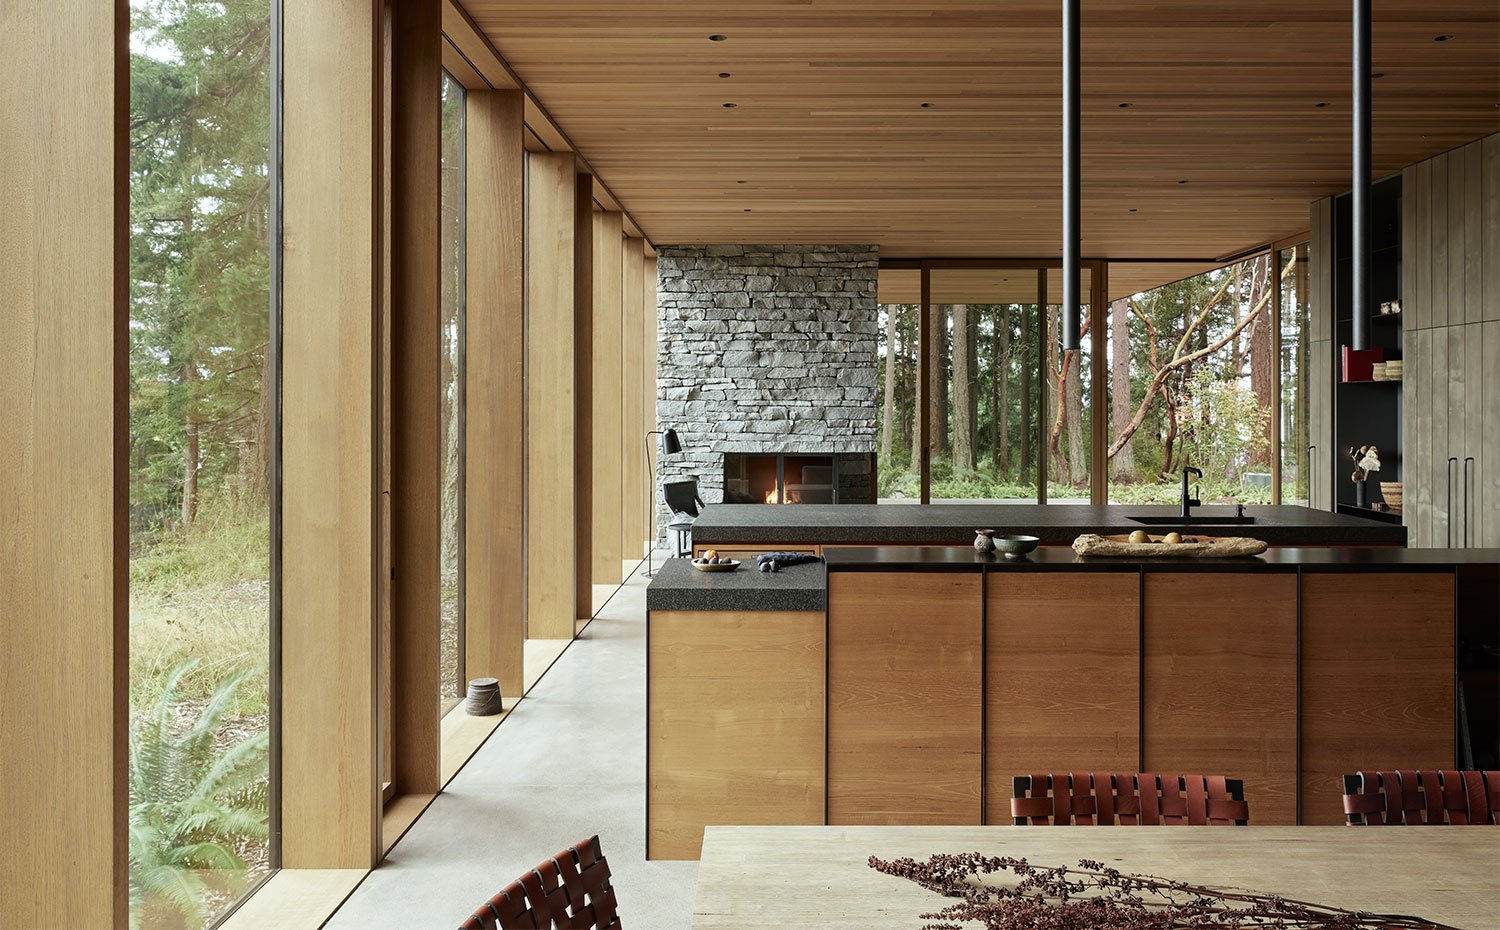 Mobiliario de cocina en acabado madera y encimera en granito negro, luminarias suspendidas cilíndricas, con doble isla de trabajo